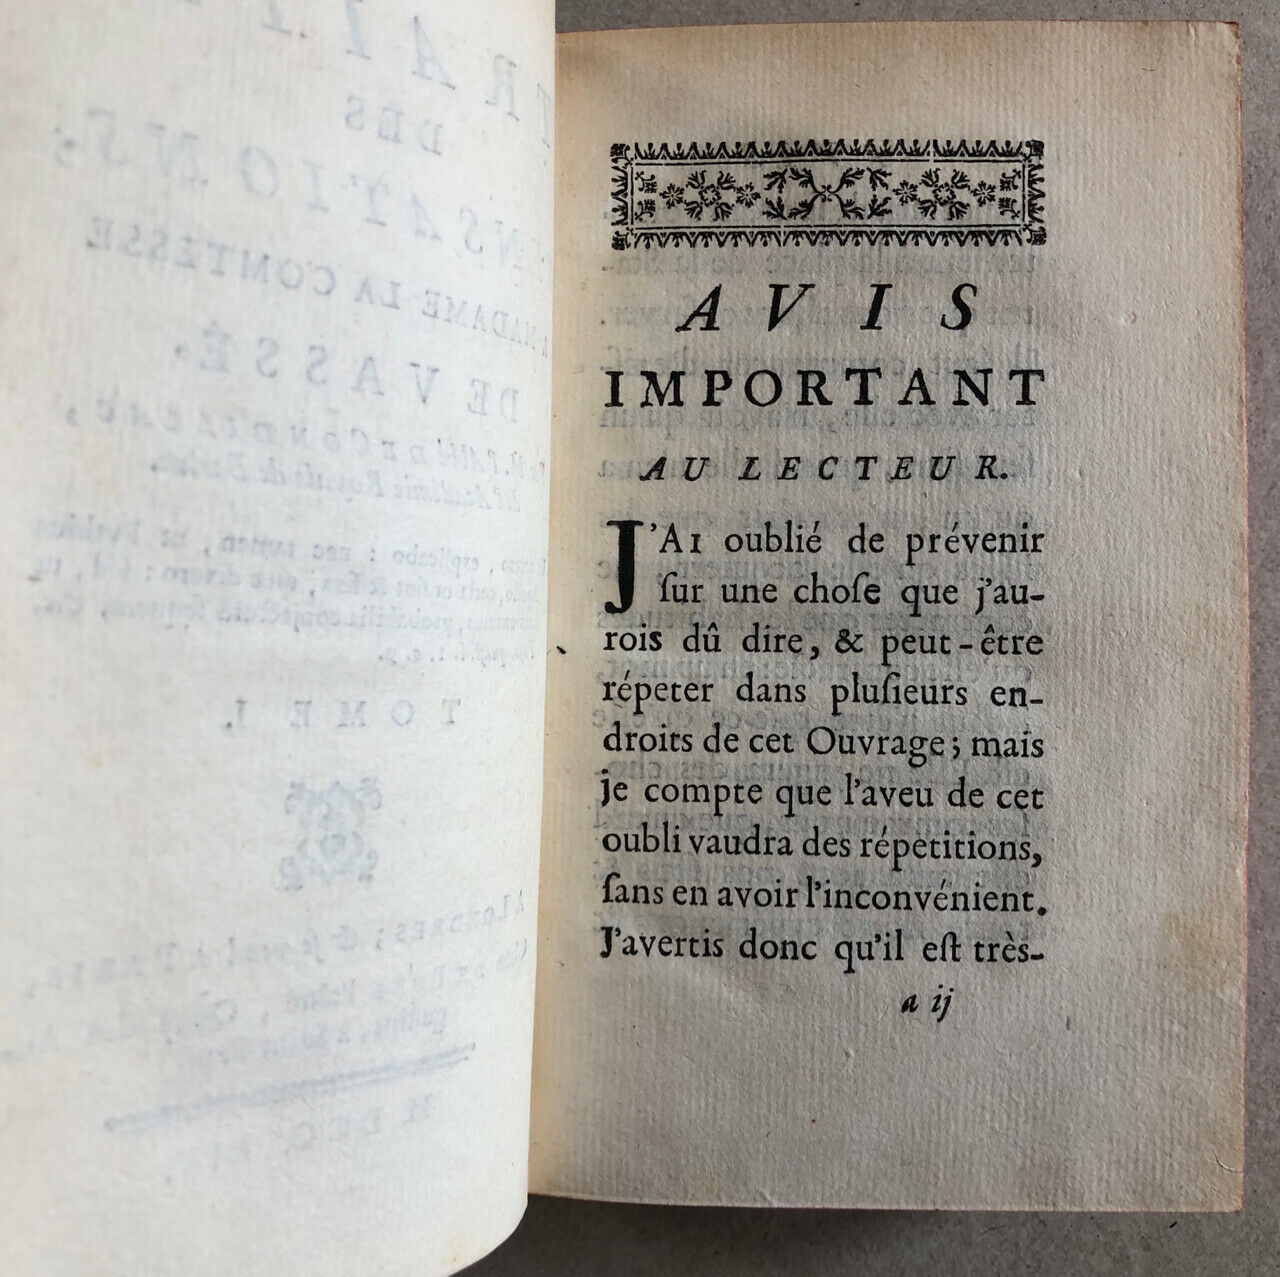 Condillac — Traité des sensations — é.o. — reliure aux armes — de Bure — 1754